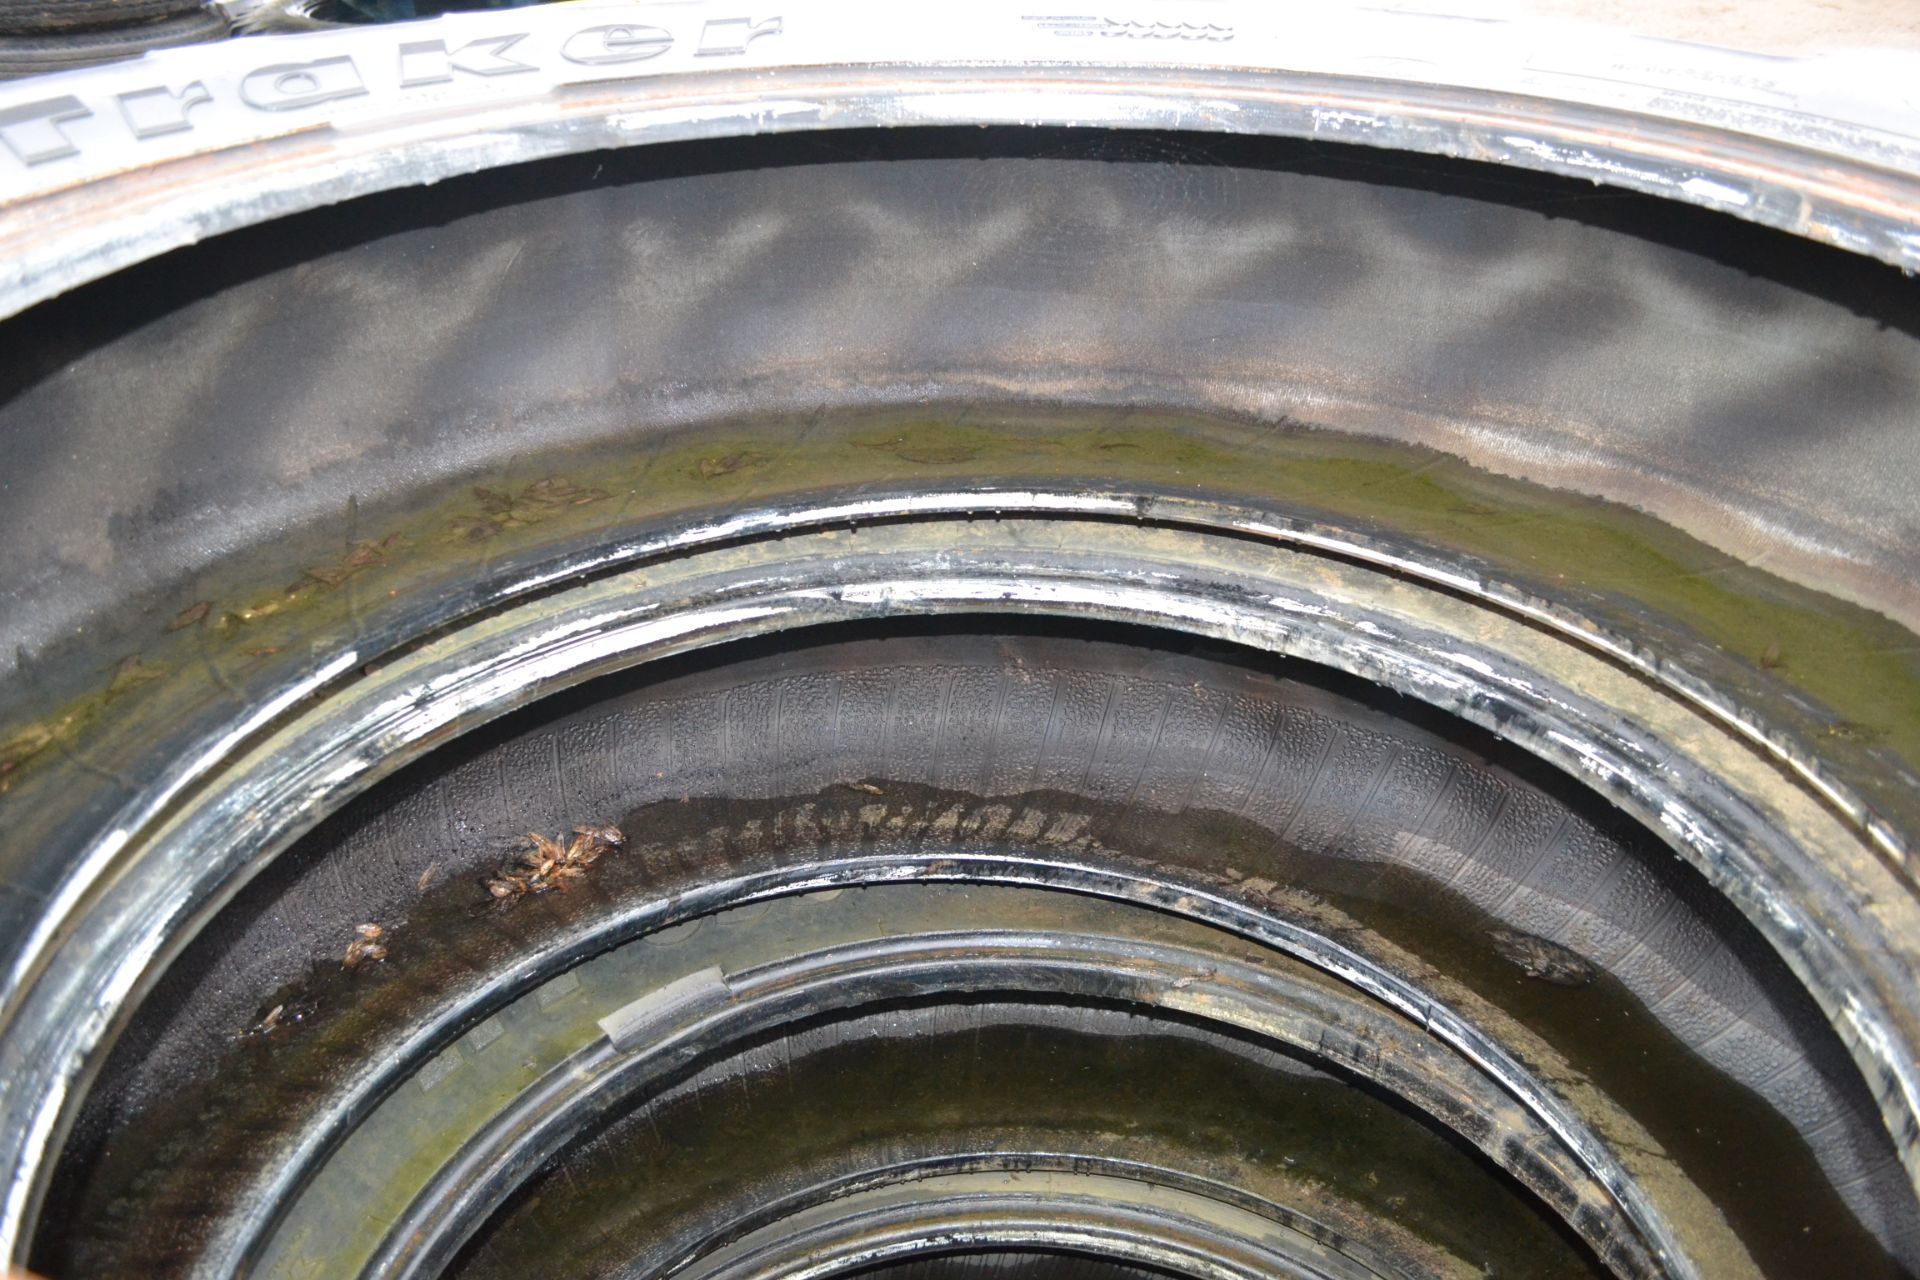 4x 320/85R32 row crop tyres to fit Bateman RB25 sprayer. One requires an inner tube. V - Bild 3 aus 3